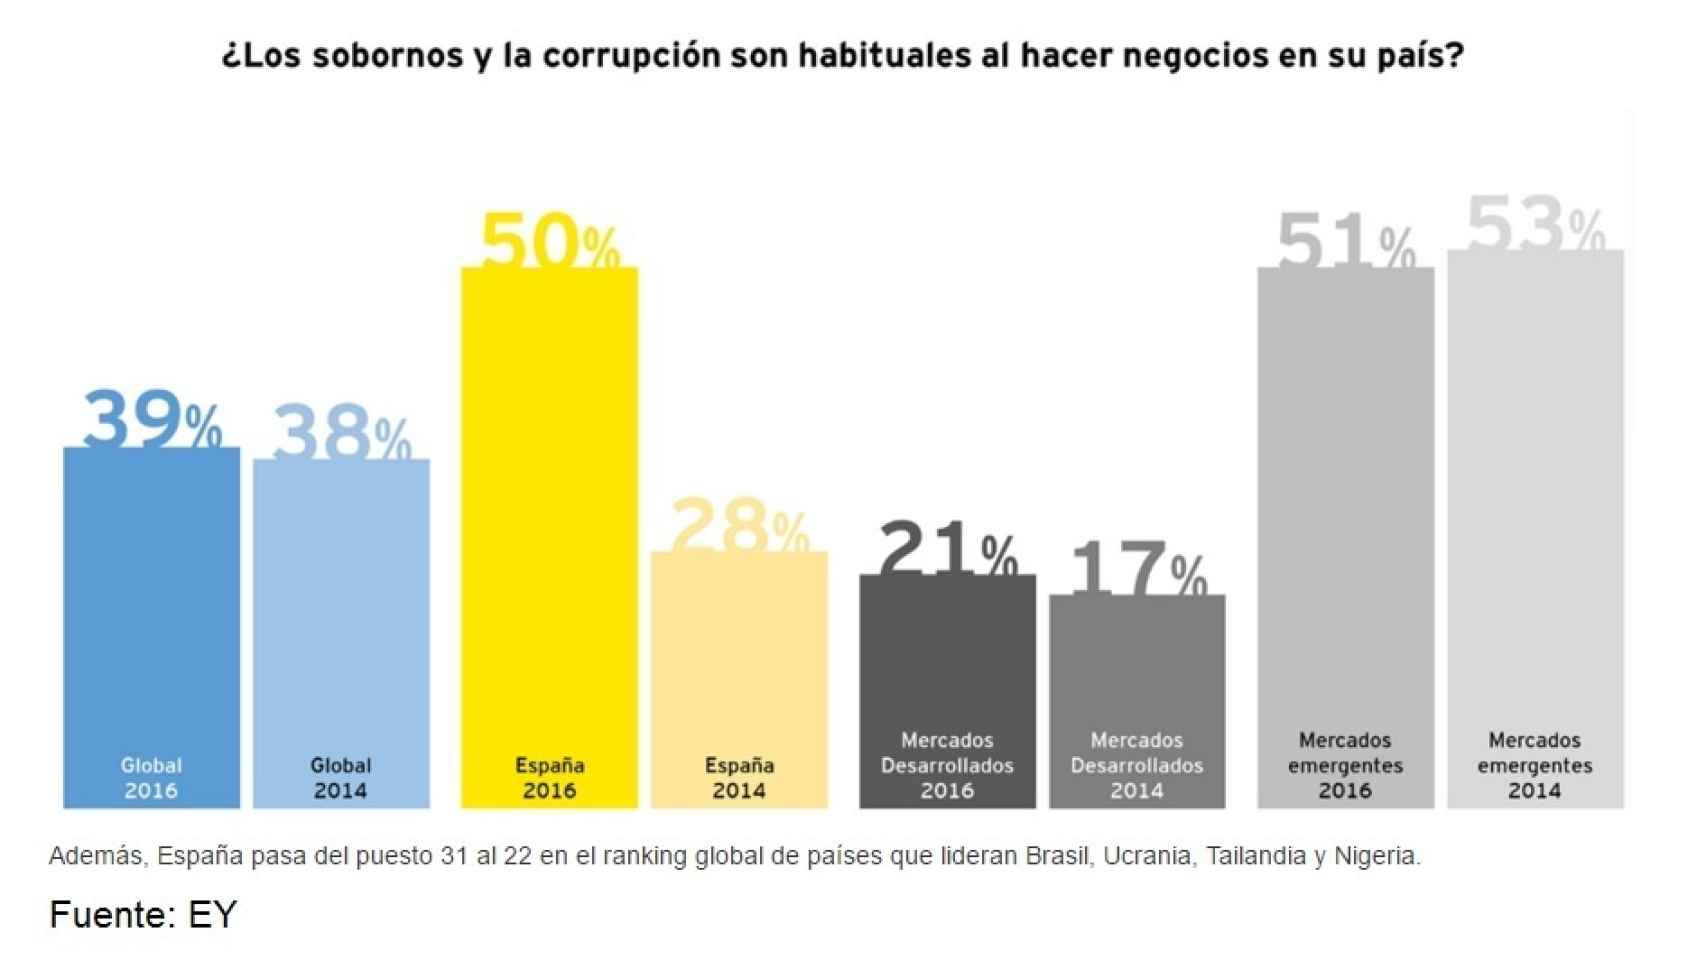 La mitad de los directivos percibe que la corrupción en España es habitual para hacer negocios